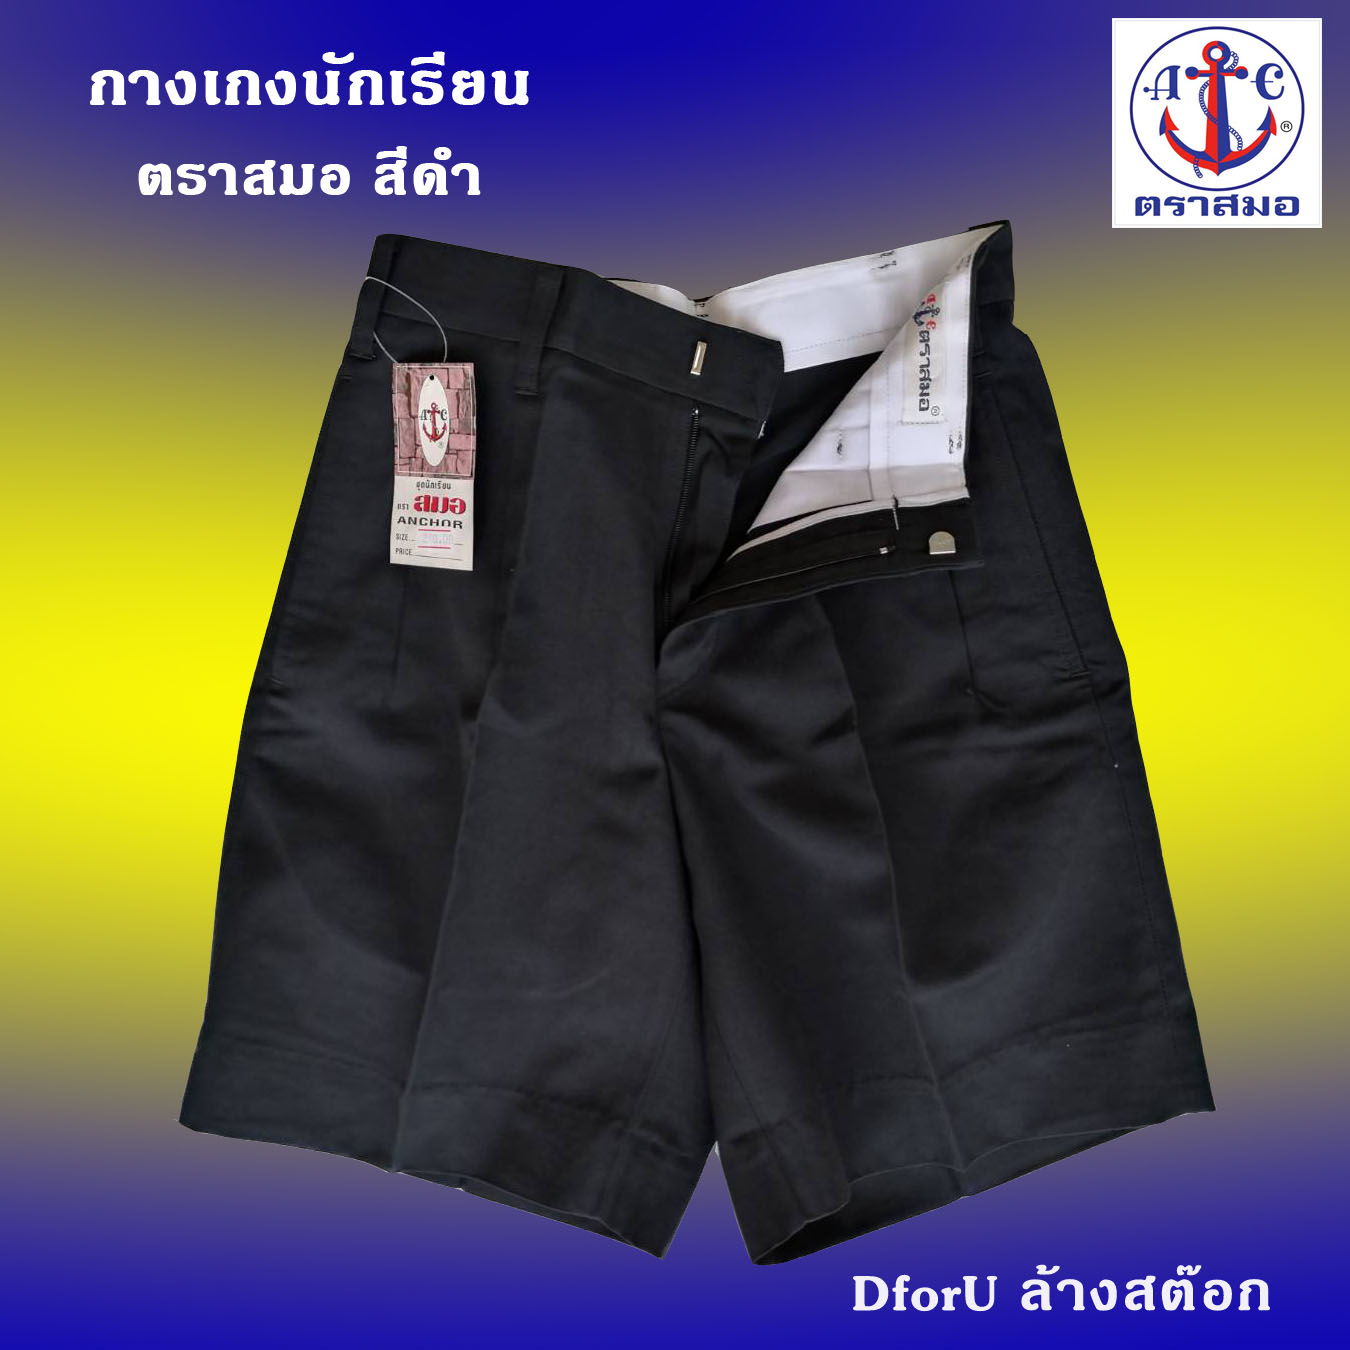 กางเกงนักเรียนชาย ตราสมอ สีดำ ยาว 15-21 เอว 25-36 นิ้ว ขนาด : (ยาวxเอว)